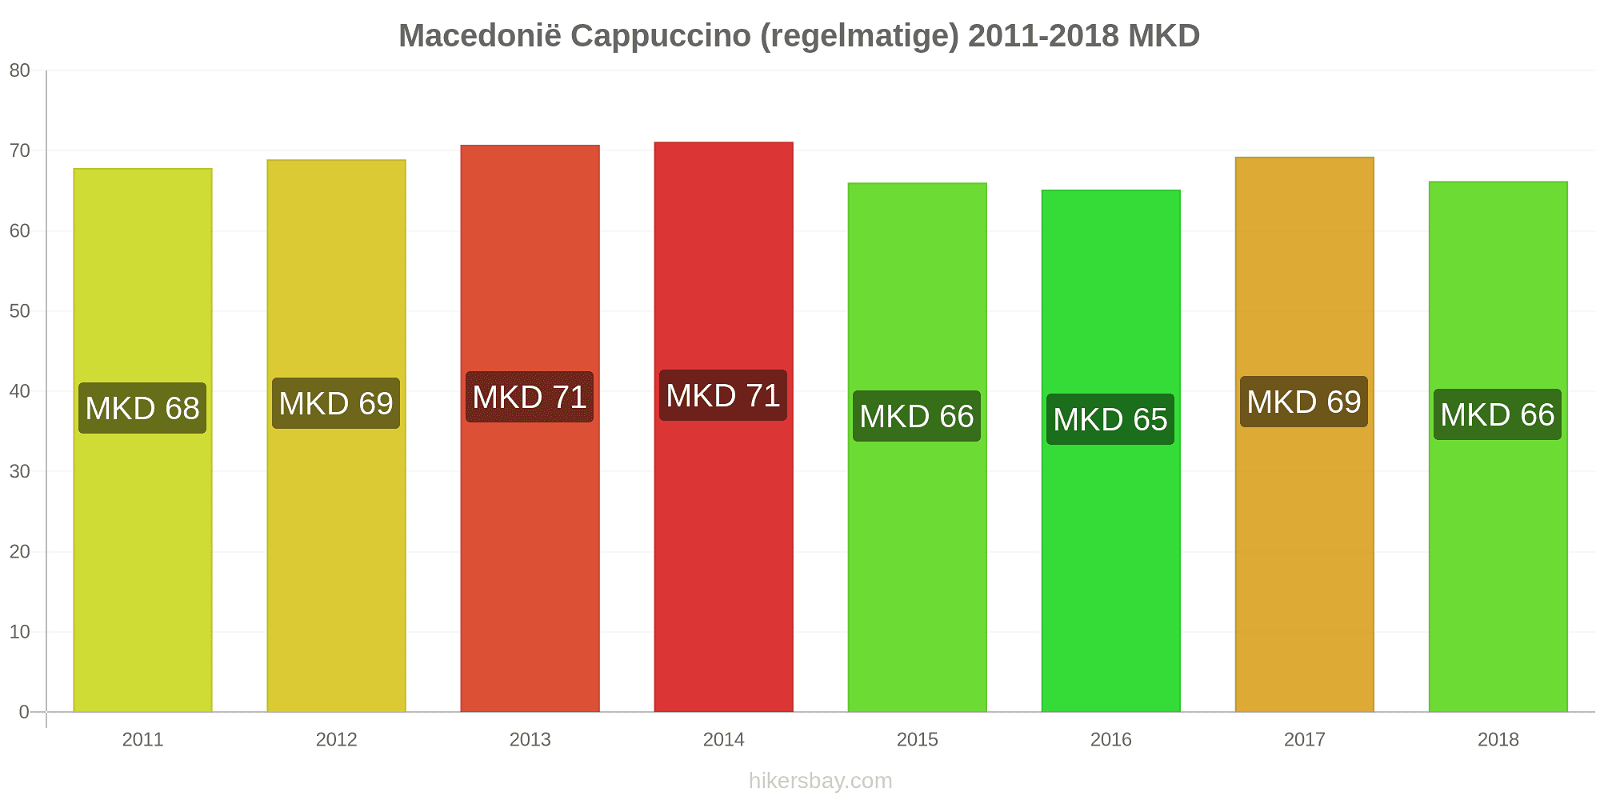 Macedonië prijswijzigingen Cappuccino hikersbay.com